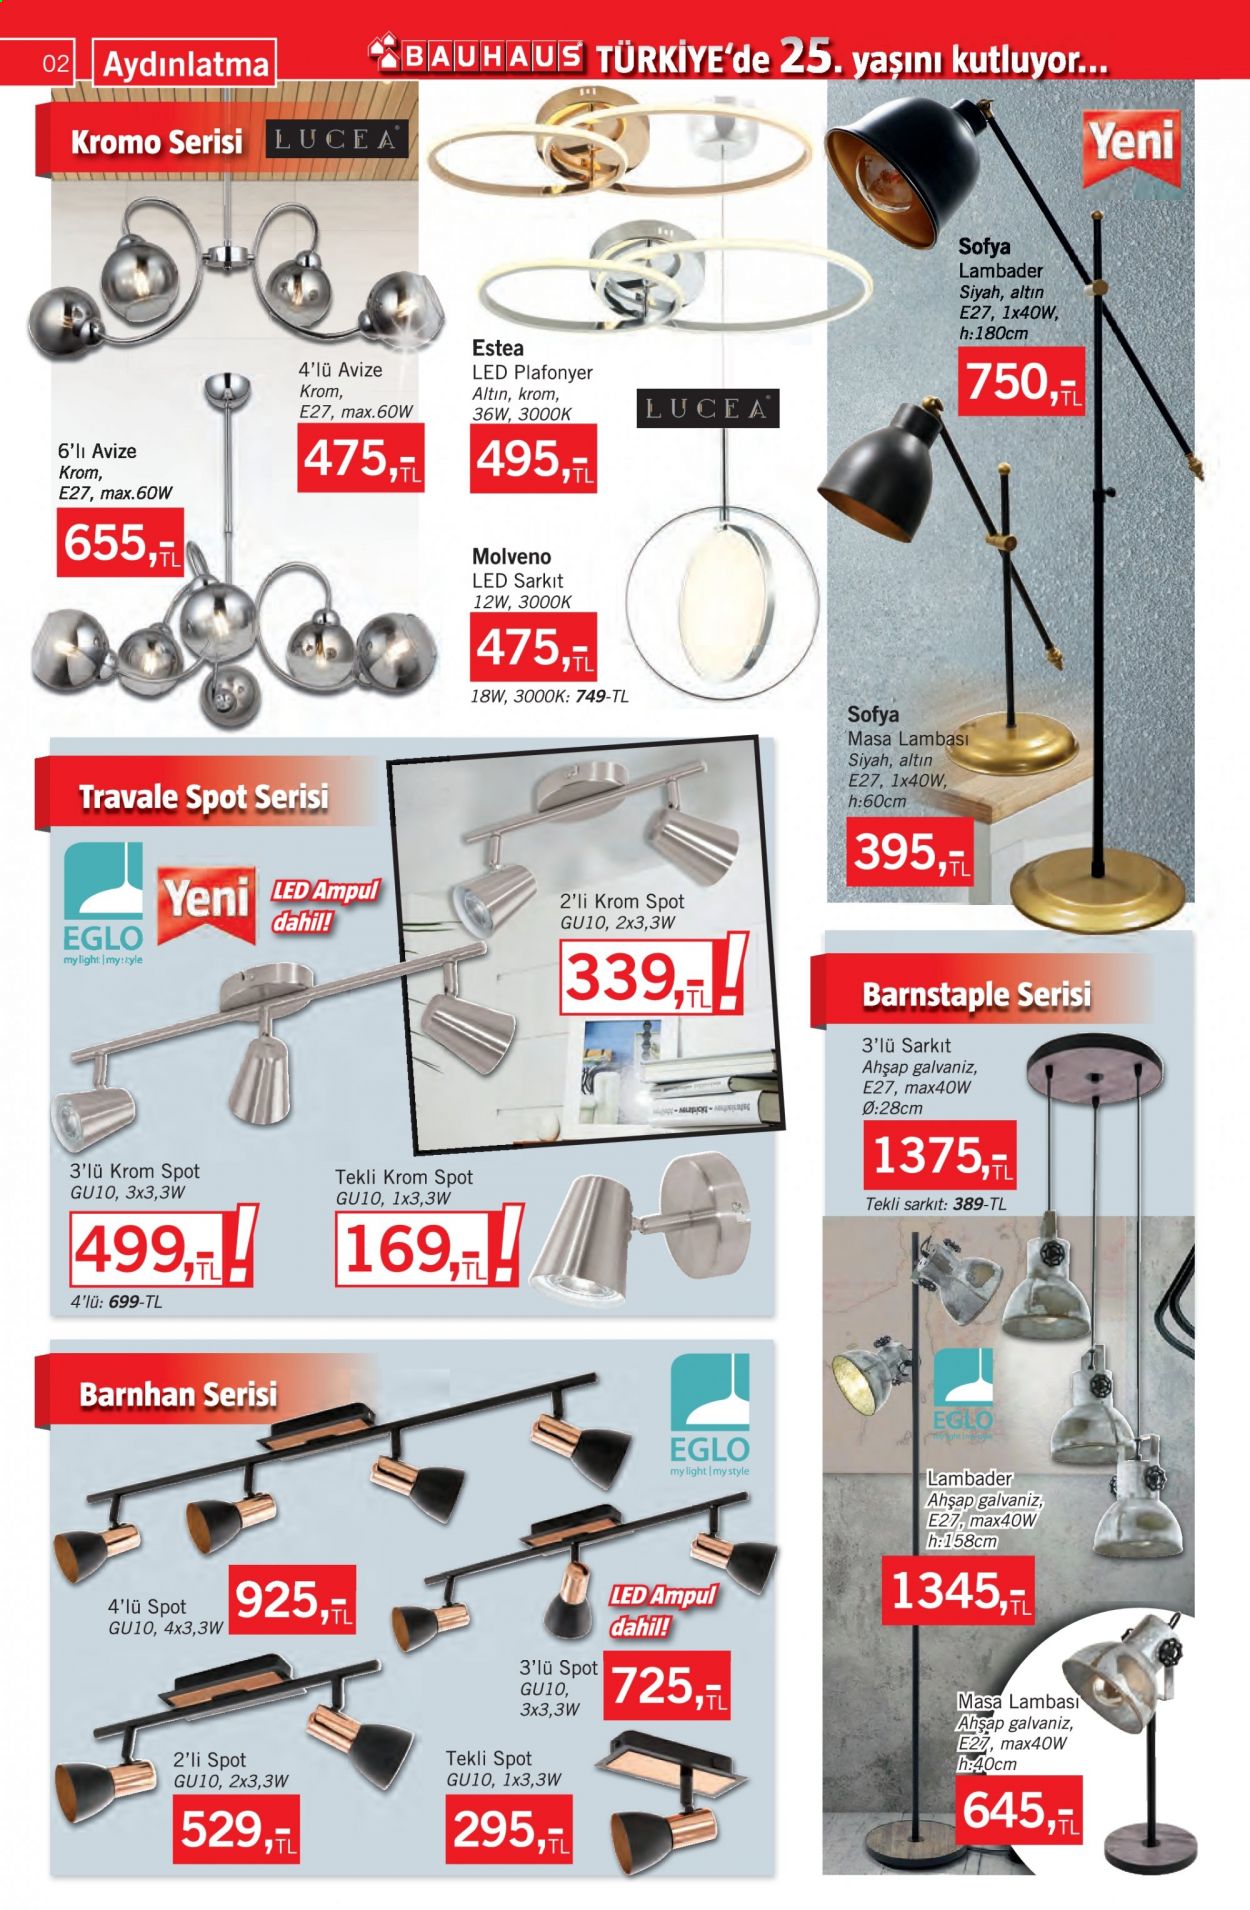 thumbnail - Bauhaus aktüel ürünler, broşür  - 8.7.2021 - 9.3.2021 - Satıştaki ürünler - ampul, lambader, led plafonyer, avize, aydınlatma. Sayfa 2.